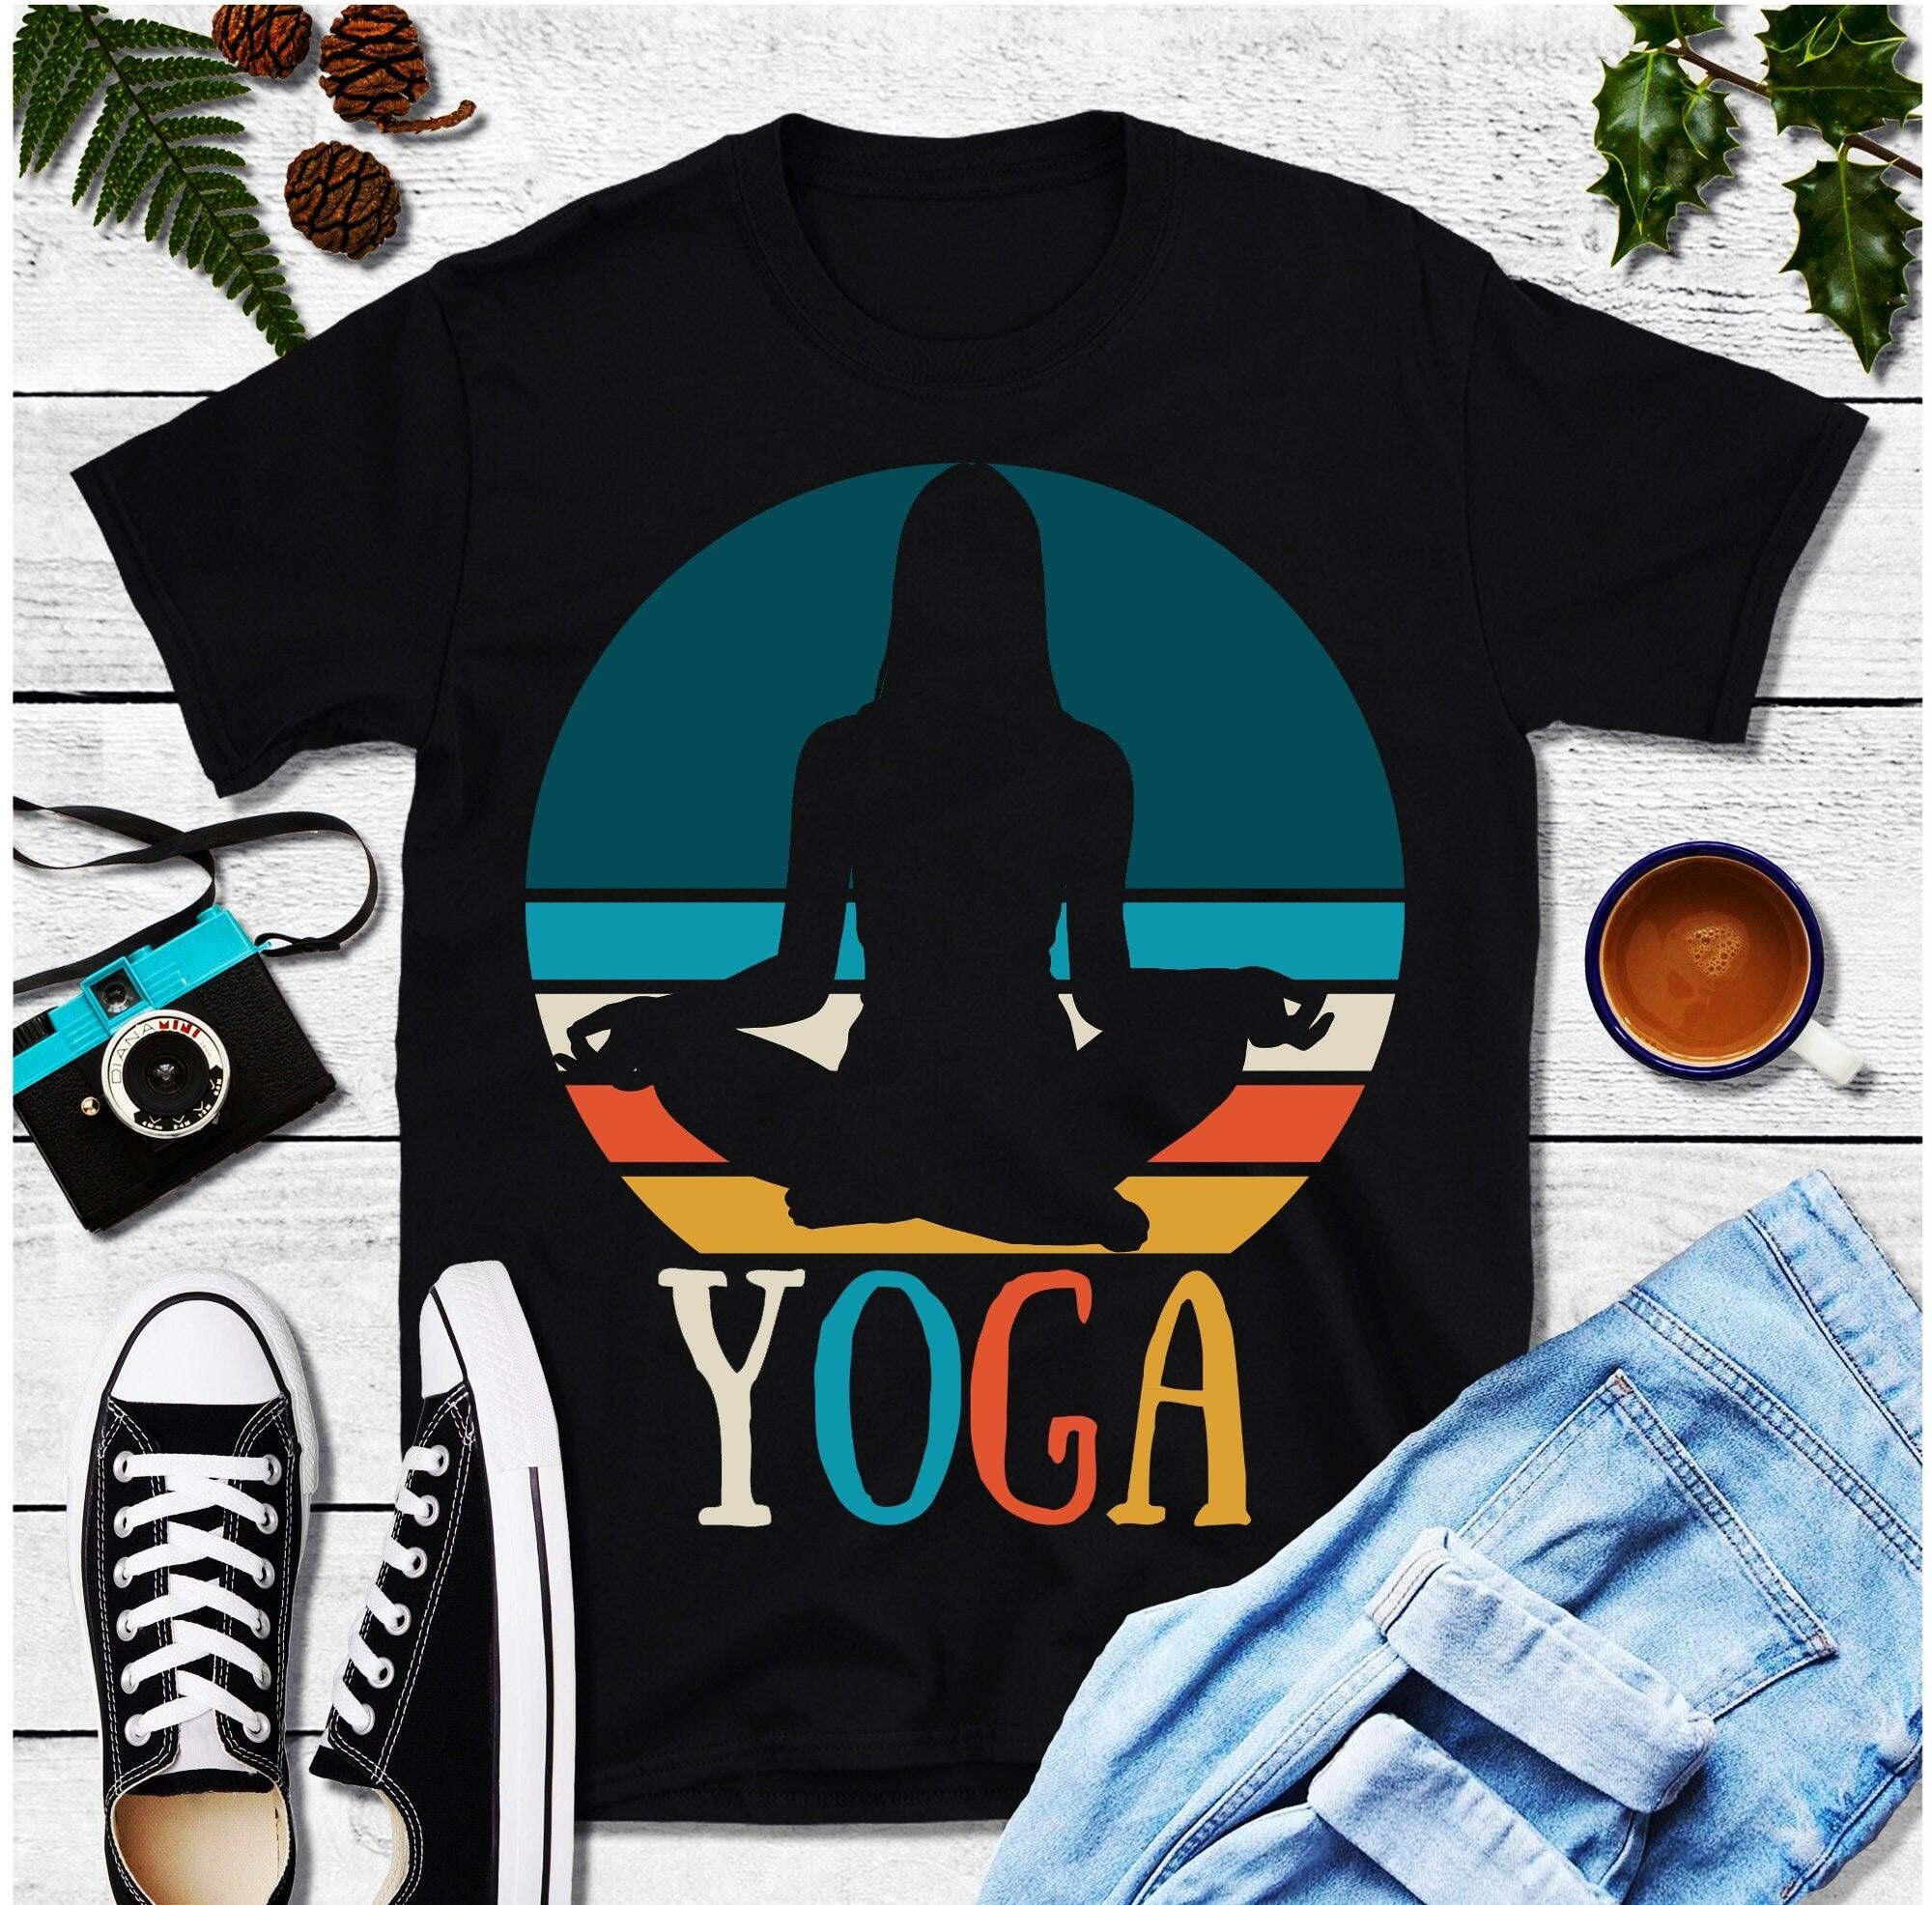 Иога Гирл | Ретро мајице за залазак сунца, мајица са поклоном за јогу, мајица Намасте, поклон за јогија, мајица за љубитеље јоге, мајица за медитацију, мајица за јогу, мајица за јогу - плусминусцо.цом